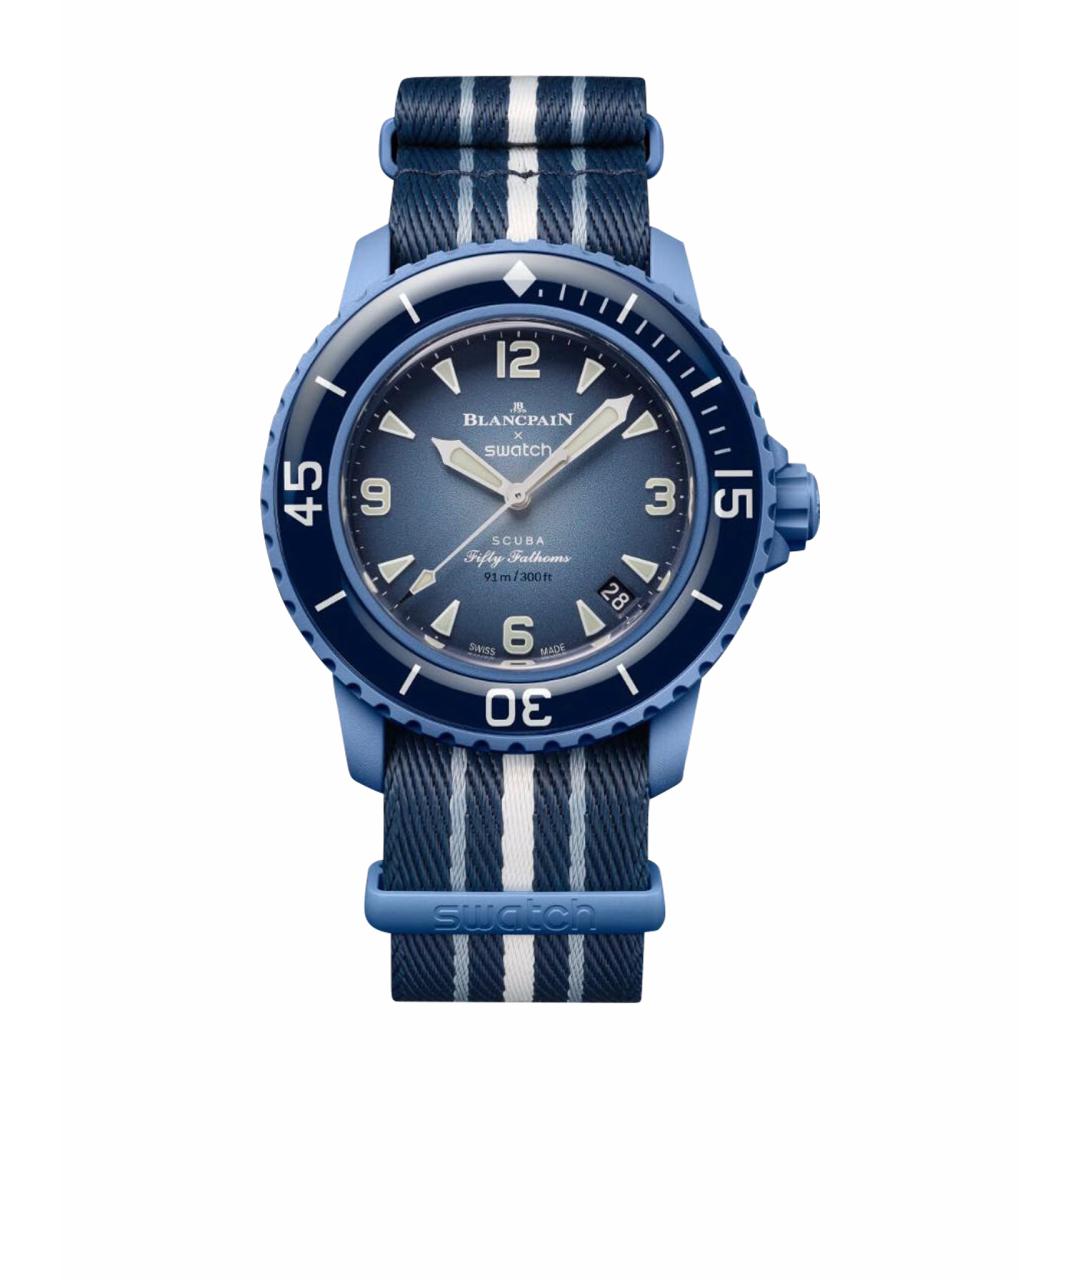 Blancpain Синие часы, фото 1